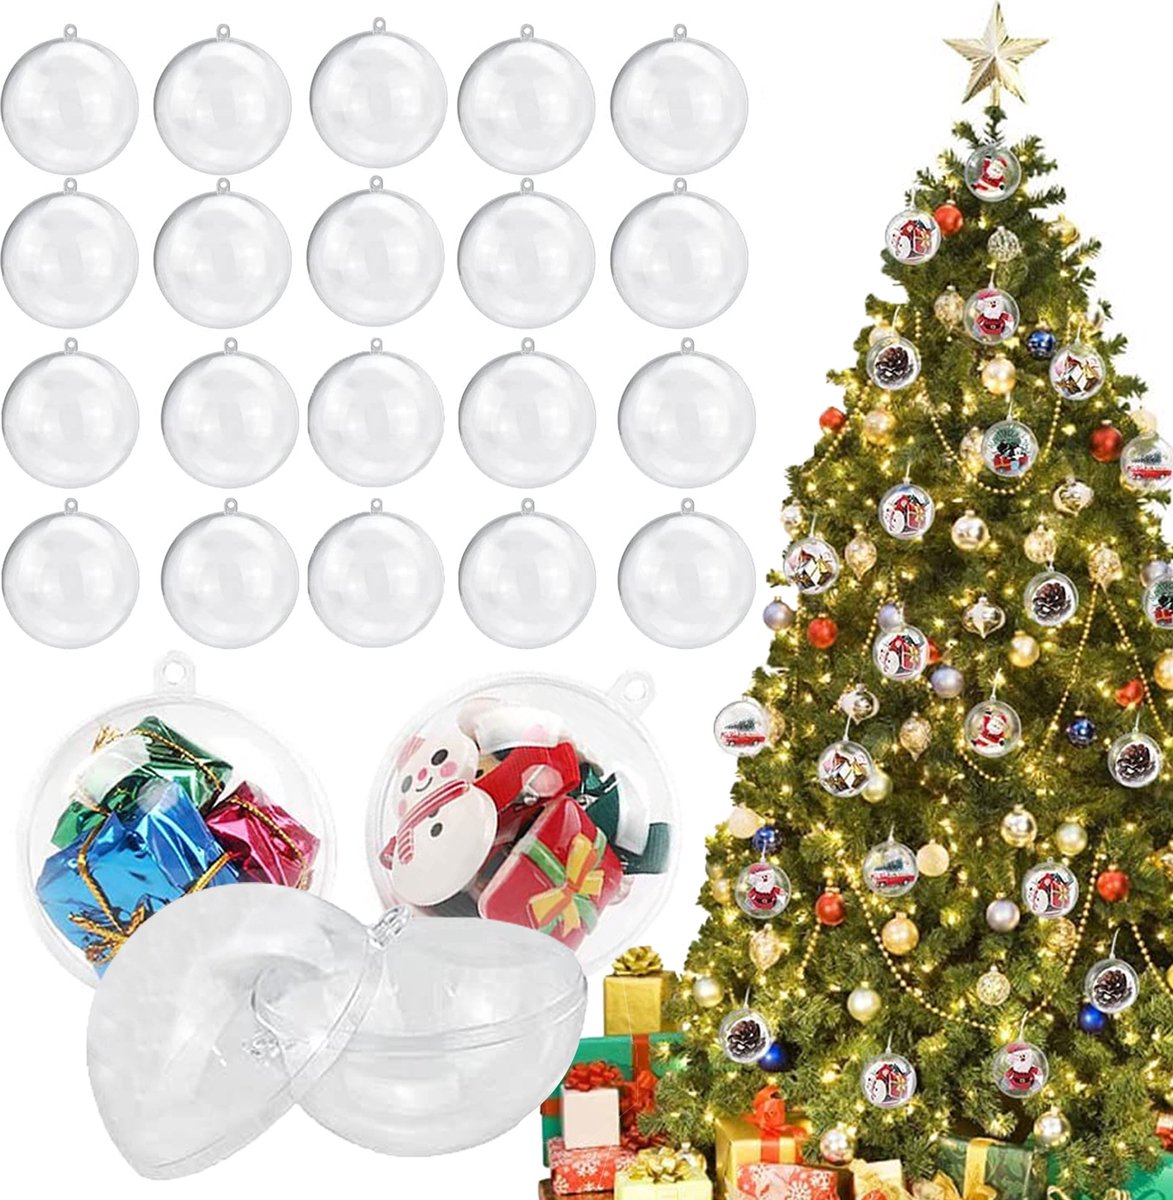 Uten - Kerstballen Plastic - kerstboom versiering - Christmas Gifts - kerstballenset - 20 stuks - kerstboom ballen - Ø5cm - wit